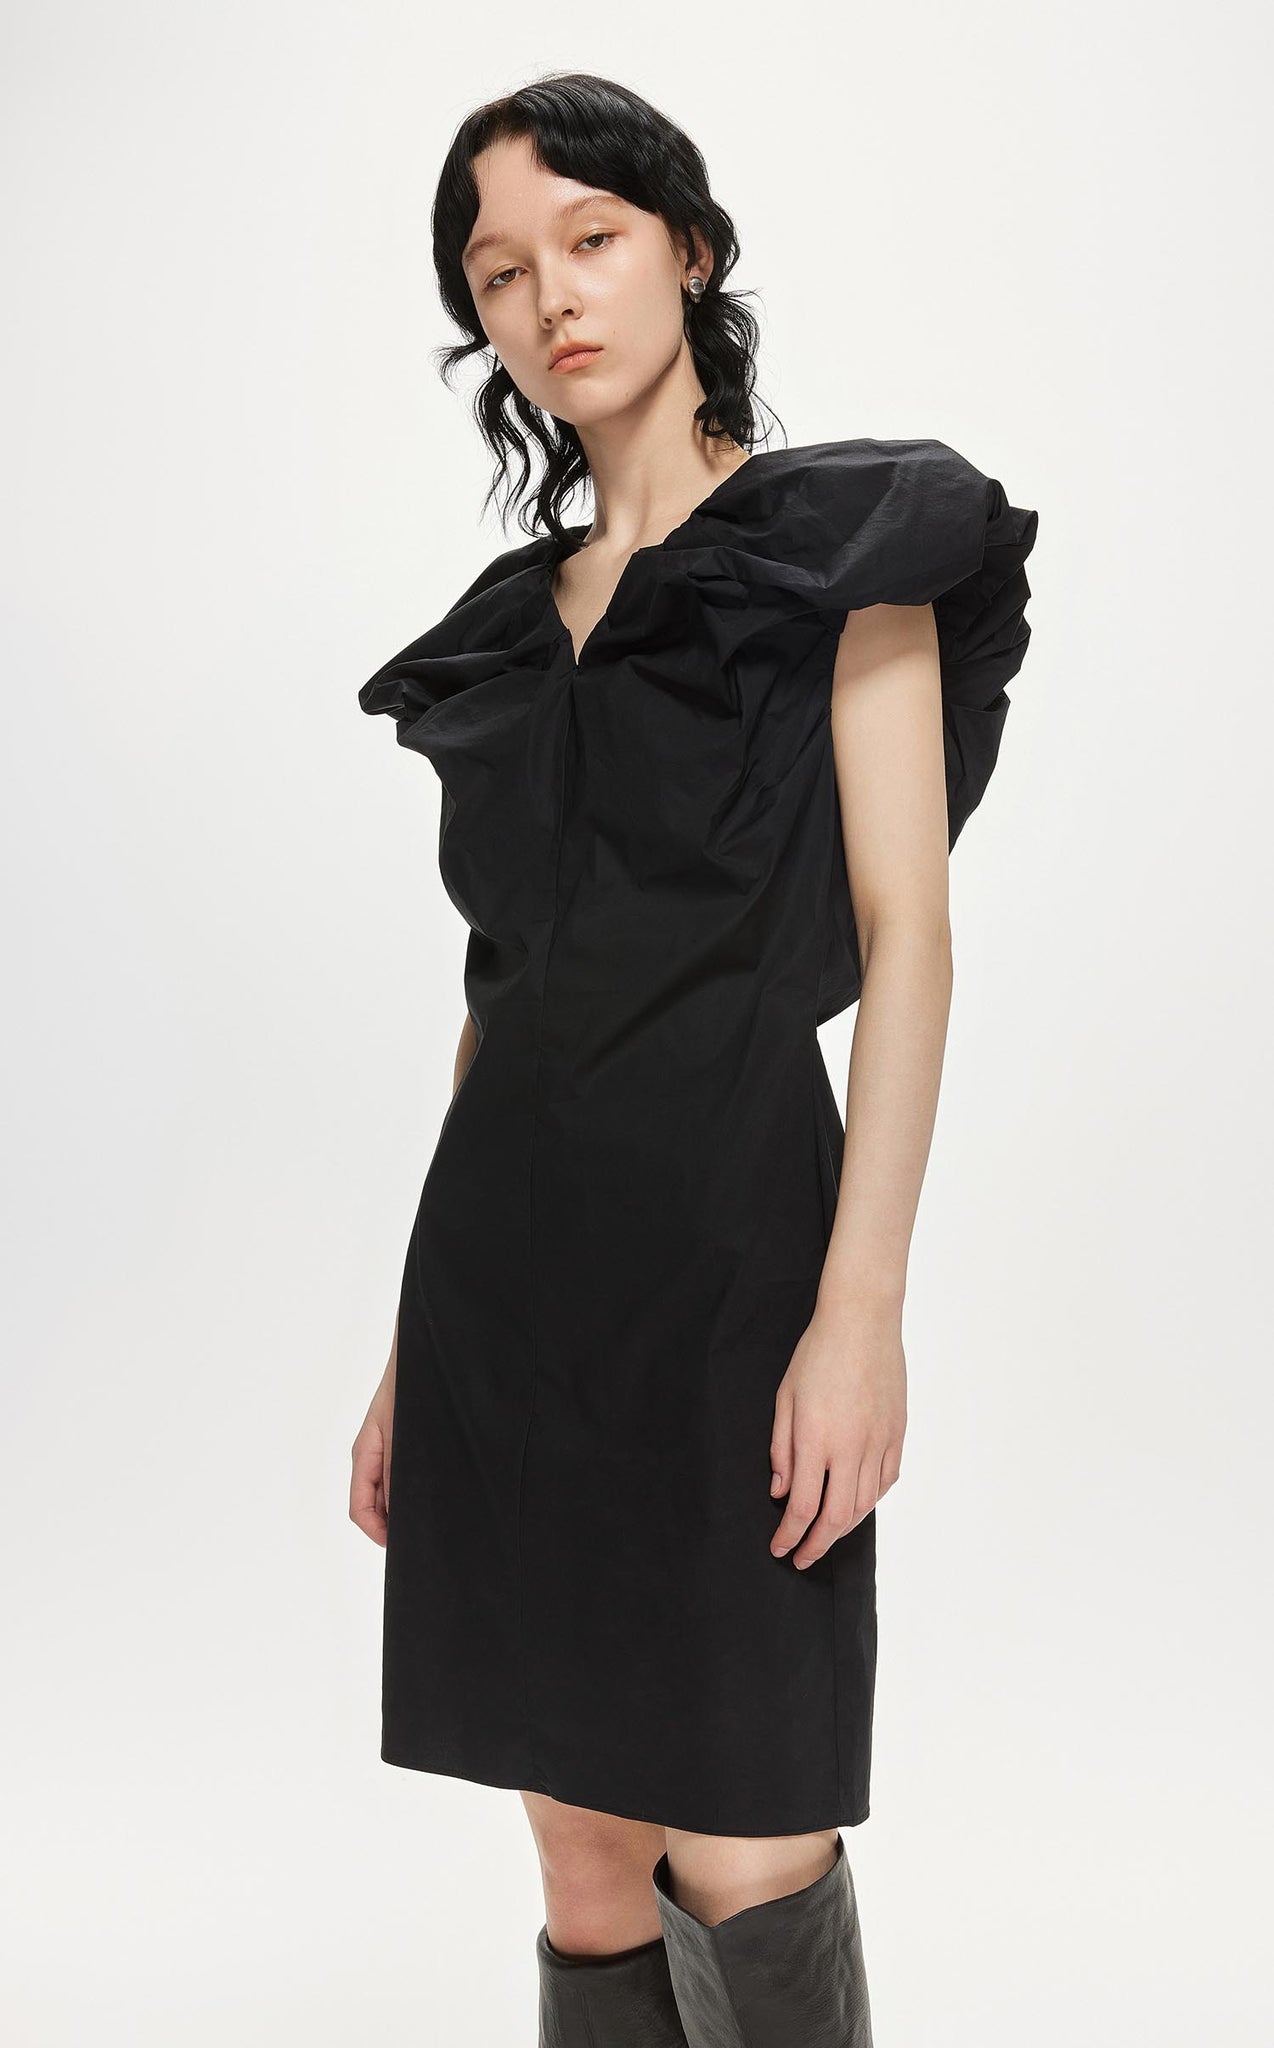 Dresses / JNBY Ruffled Shoulder V-Neck Sleeveless Dress